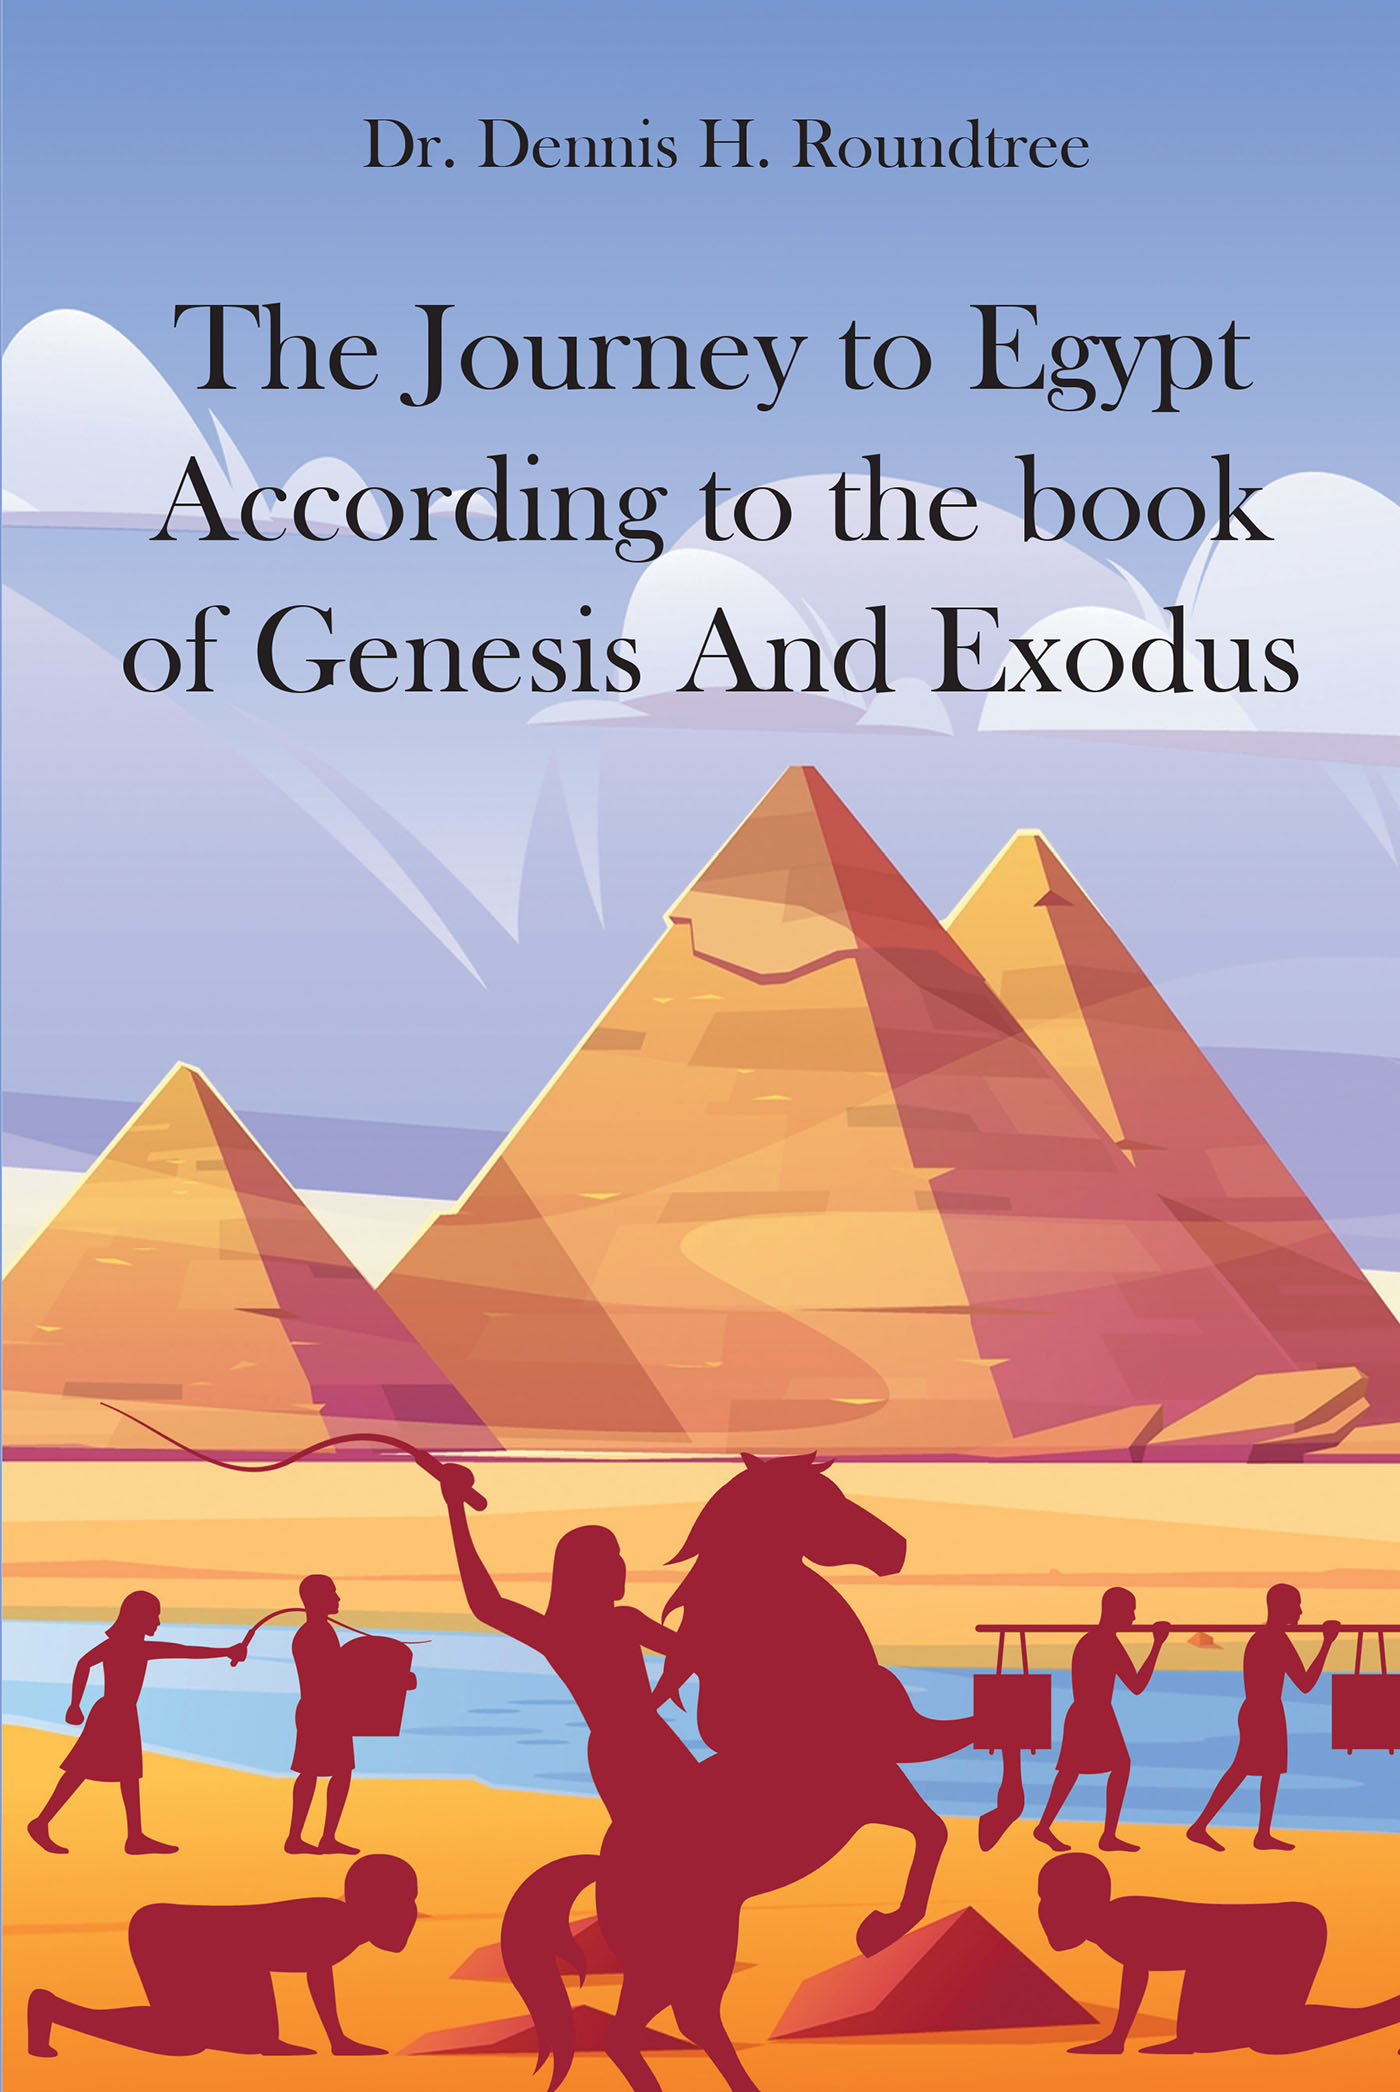 Heavenly guidance (English Edition) - eBooks em Inglês na